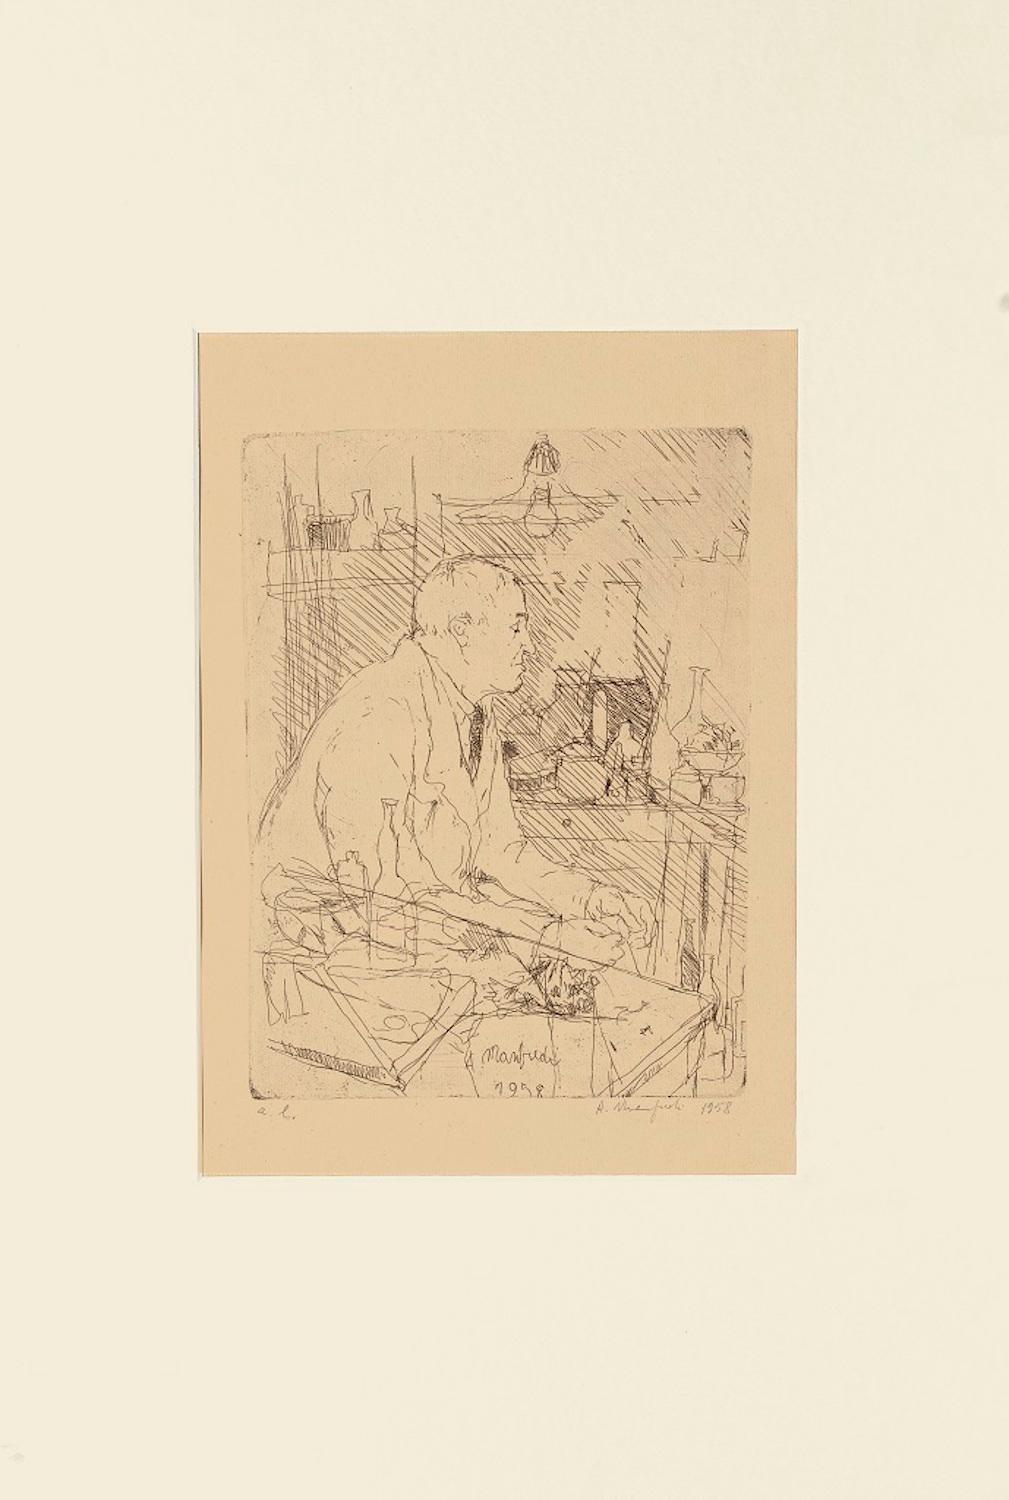 Portrait of Giorgio Morandi in his Studio - 1958 - Print by Alberto Manfredi